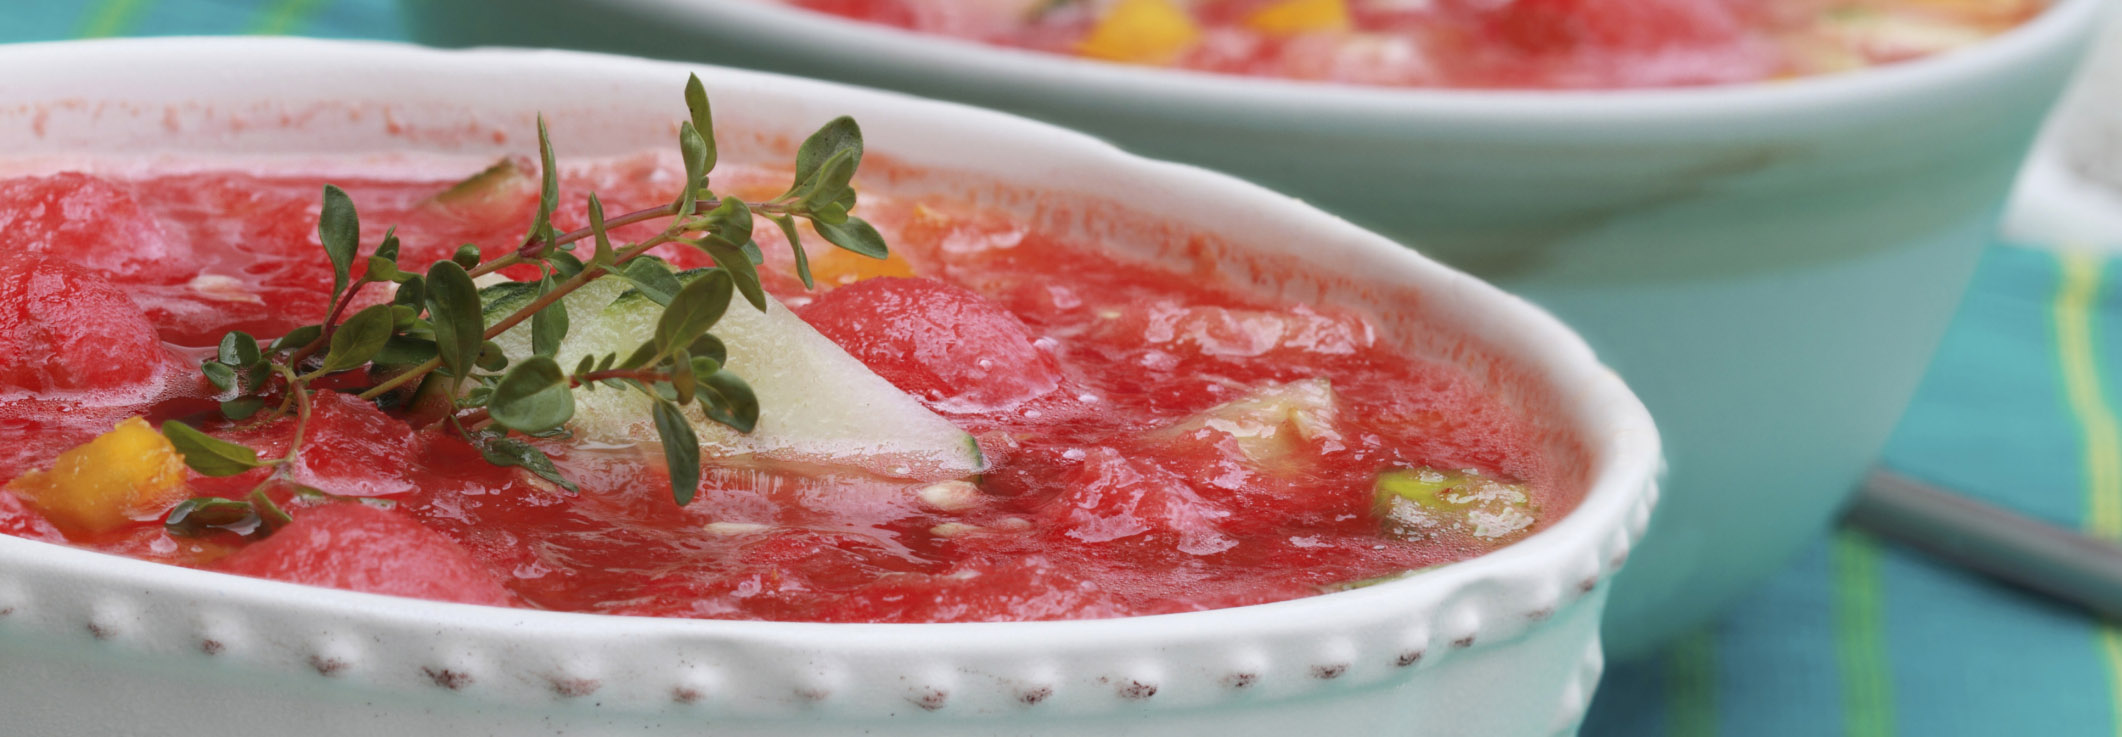 سوپ هندوانه درست کنید و برای اولین بار تجربه کنید | هندوانه با گوجه فرنگی، خرچنگ یا بلوچیز